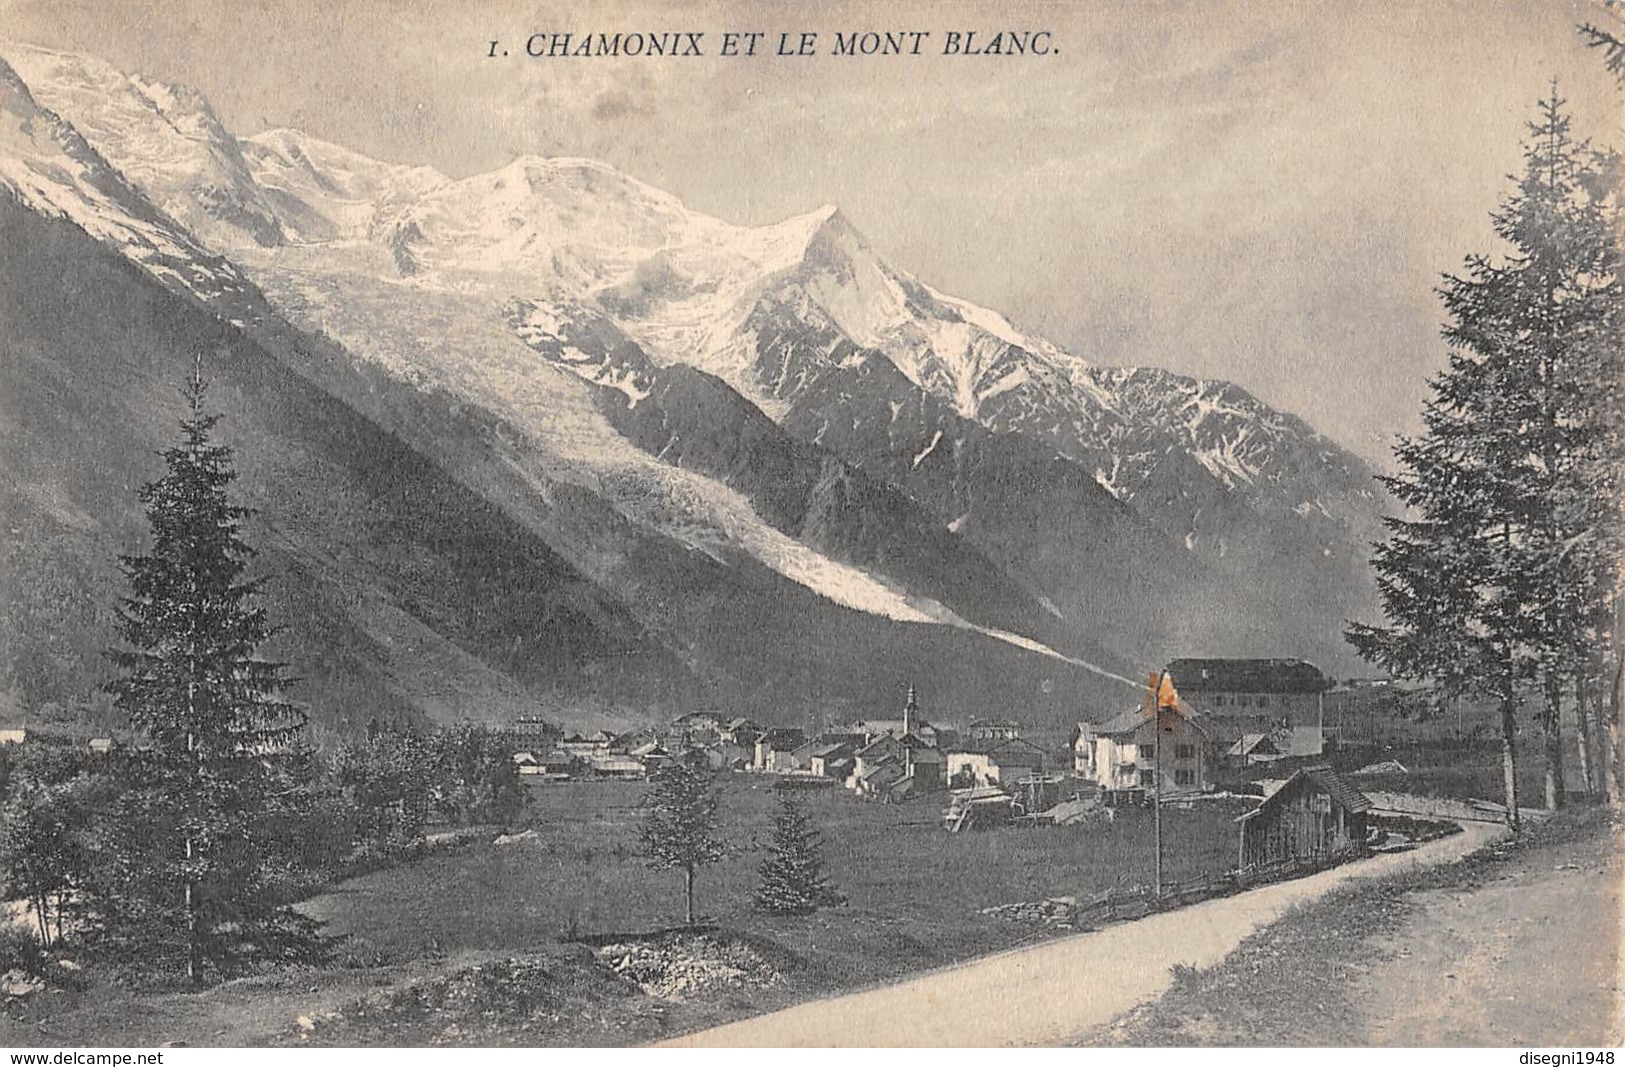 07652 "CHAMONIX ET LE MONT BLANC" CART. ORIG. SPED. '912. - Chamonix-Mont-Blanc